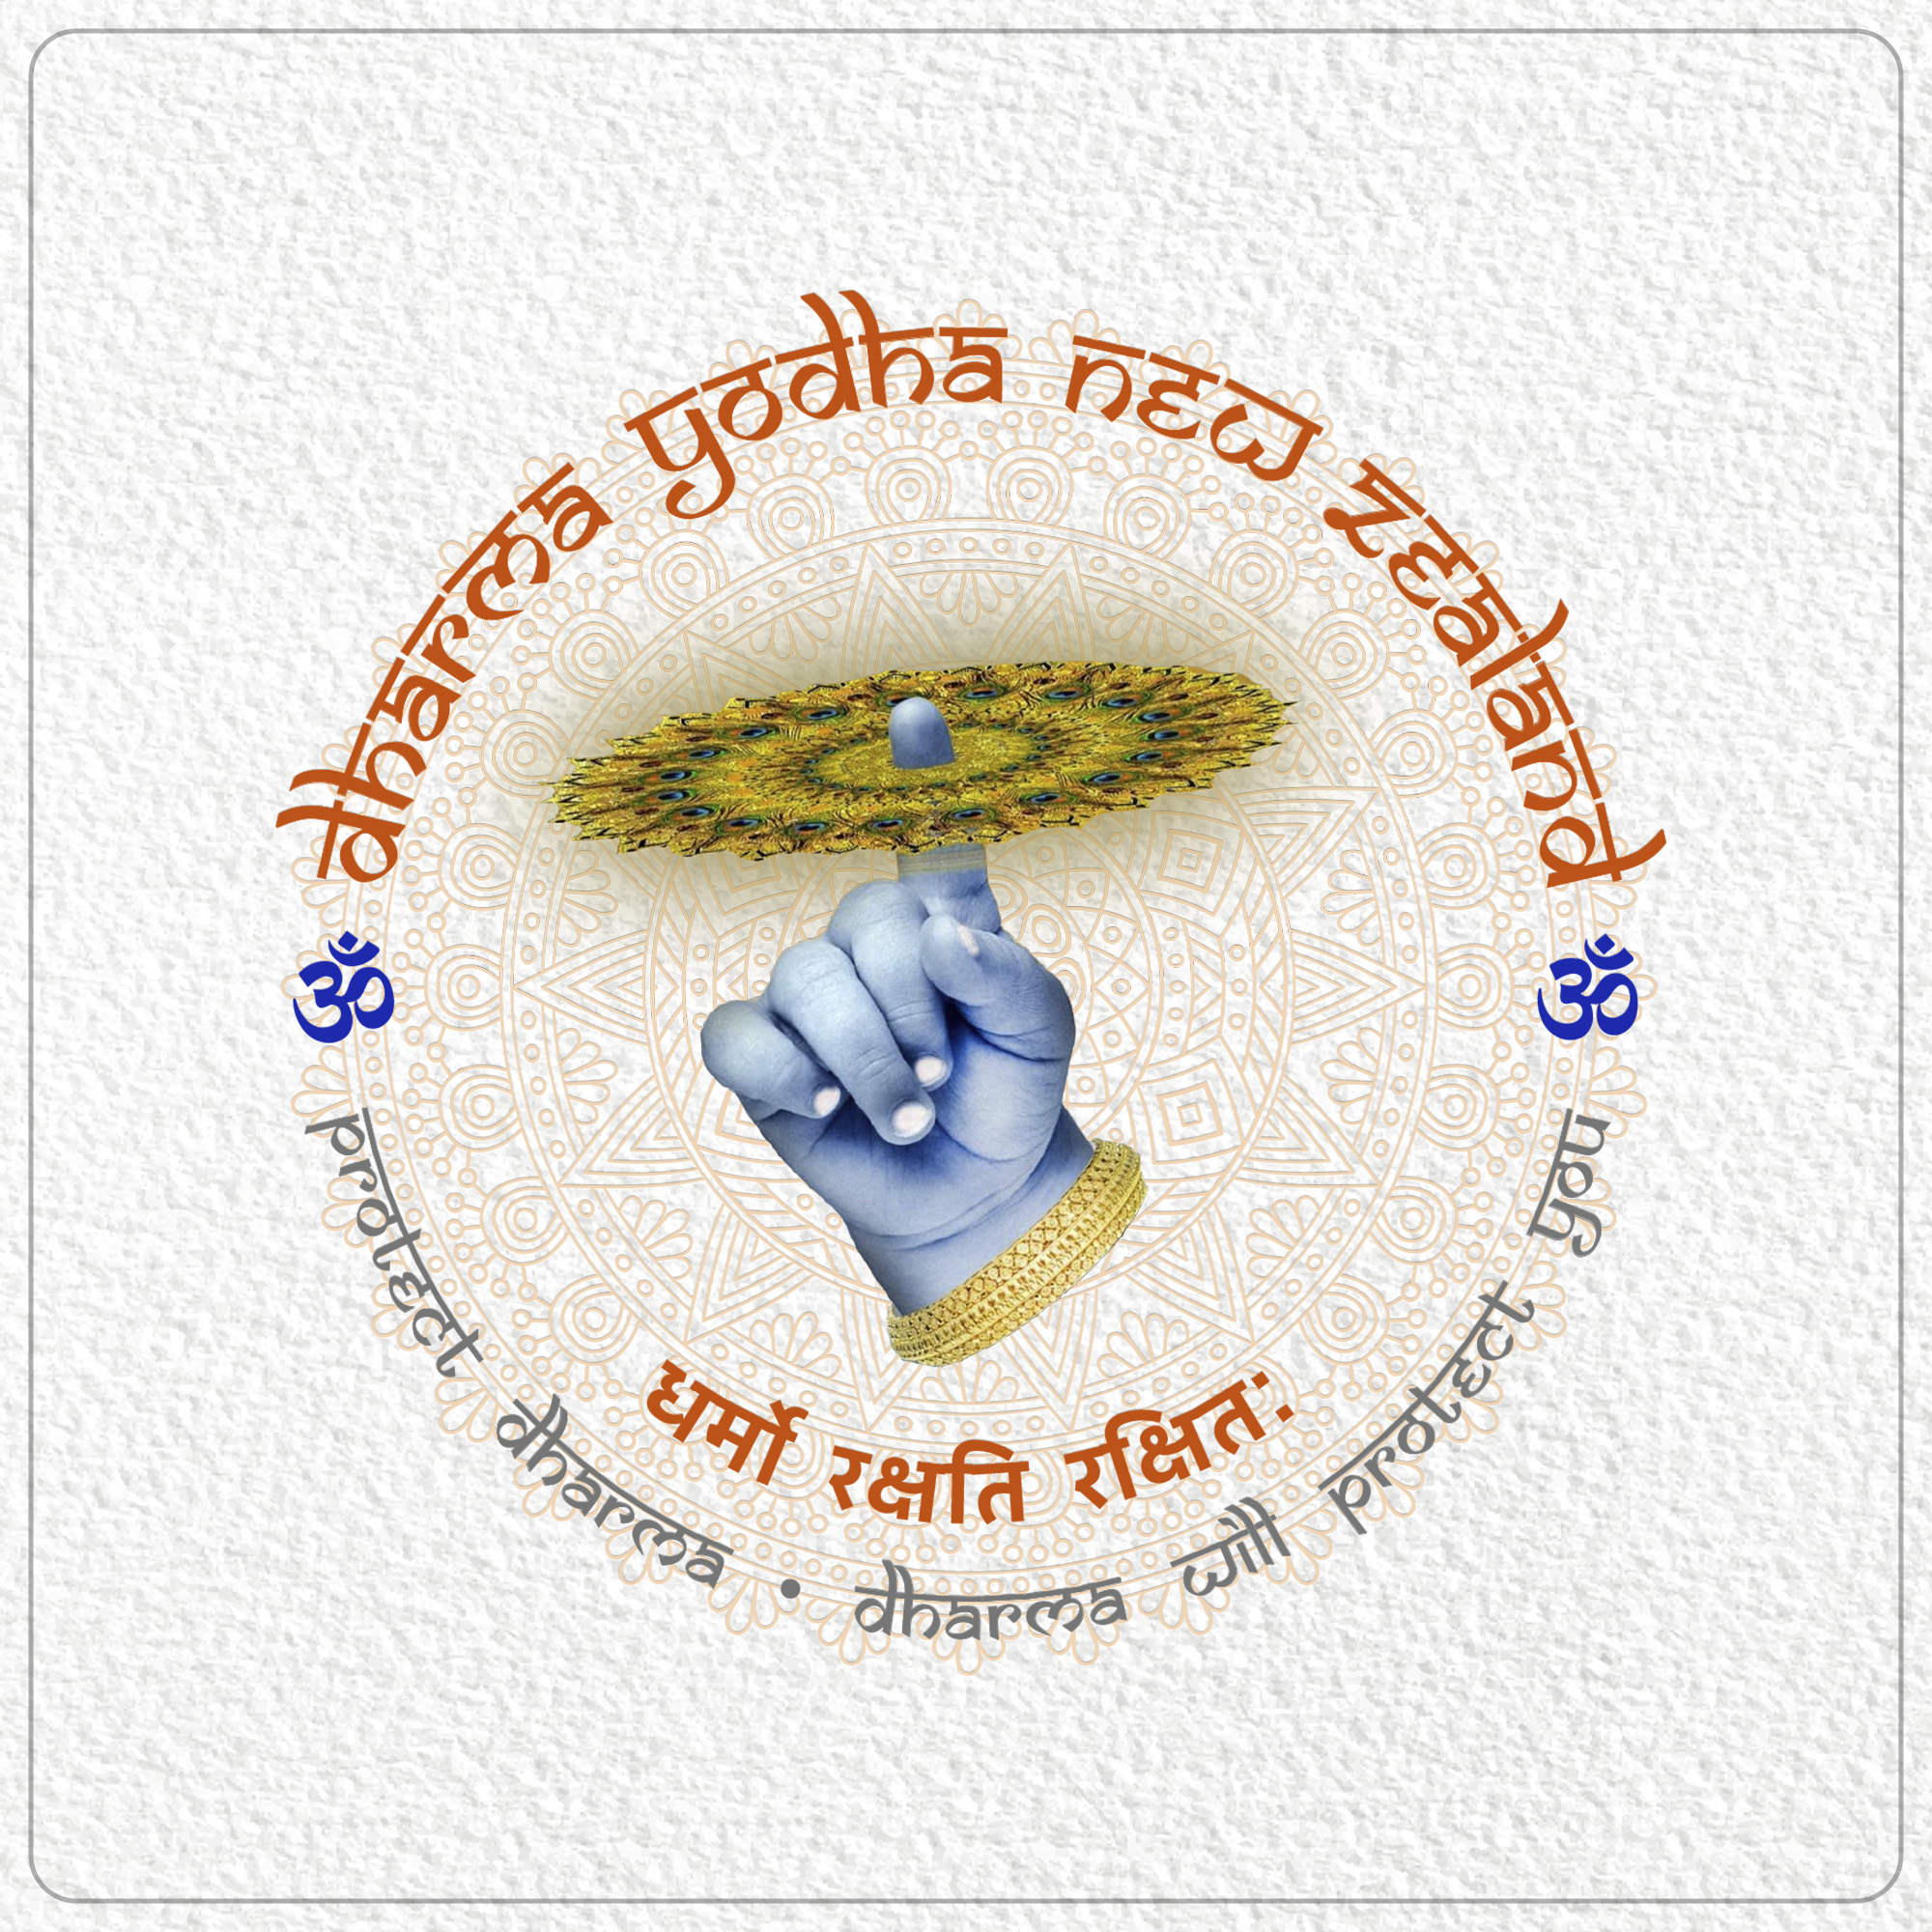 Dharma yodha logo design